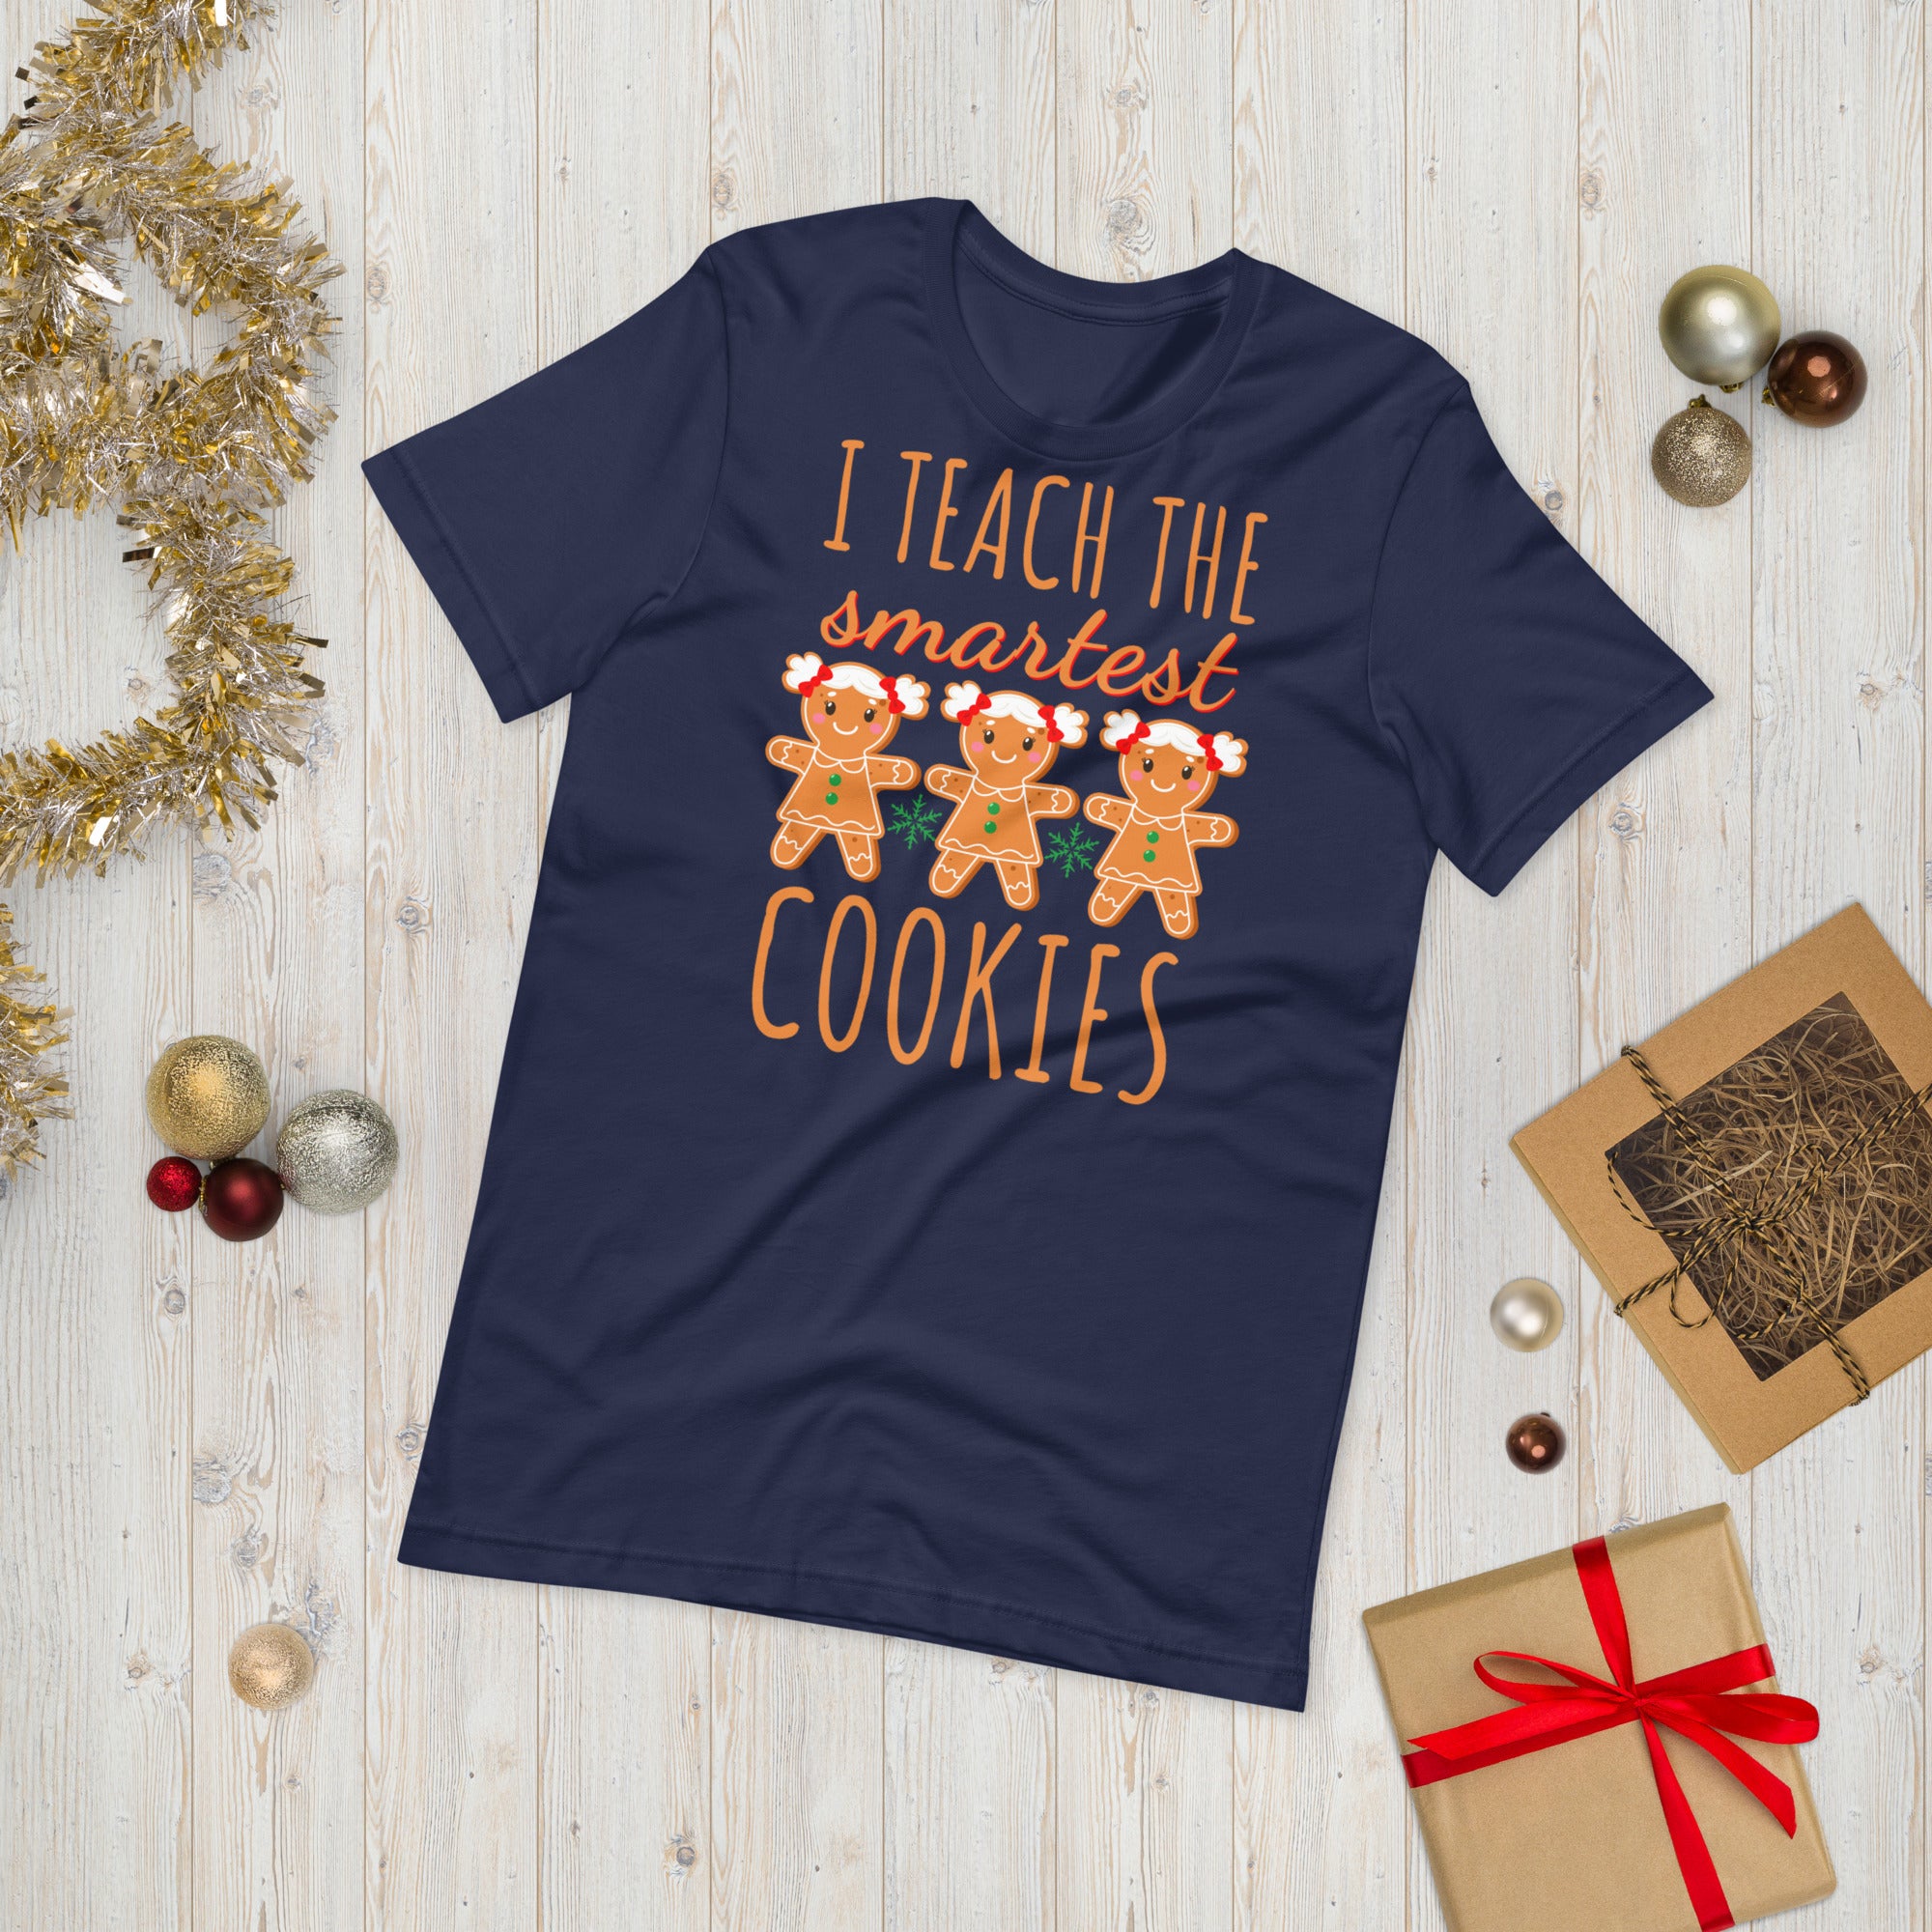 Teacher Christmas Shirt, I Teach the Smartest Cookies Shirts, Christmas Teacher T Shirt, Christmas Shirt, Teacher Christmas Tee, Xmas Gifts - Madeinsea©